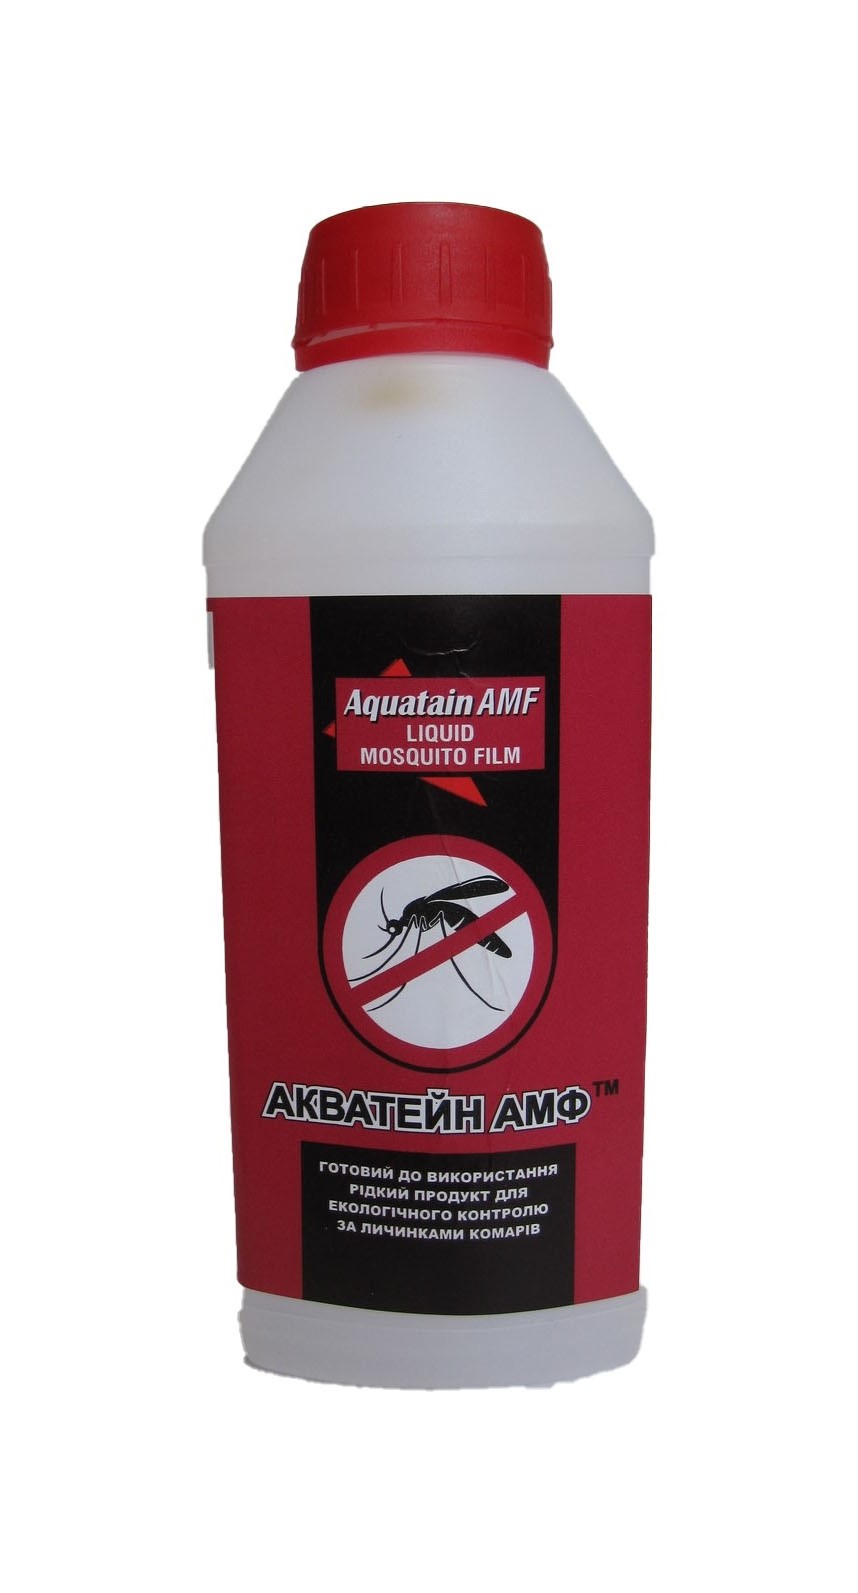             Пропонуємо унікальний продукт італійського виробництва - Акватейн АМФ (500 мл) - рідкий продукт на основі силікону для контролю за комарами.